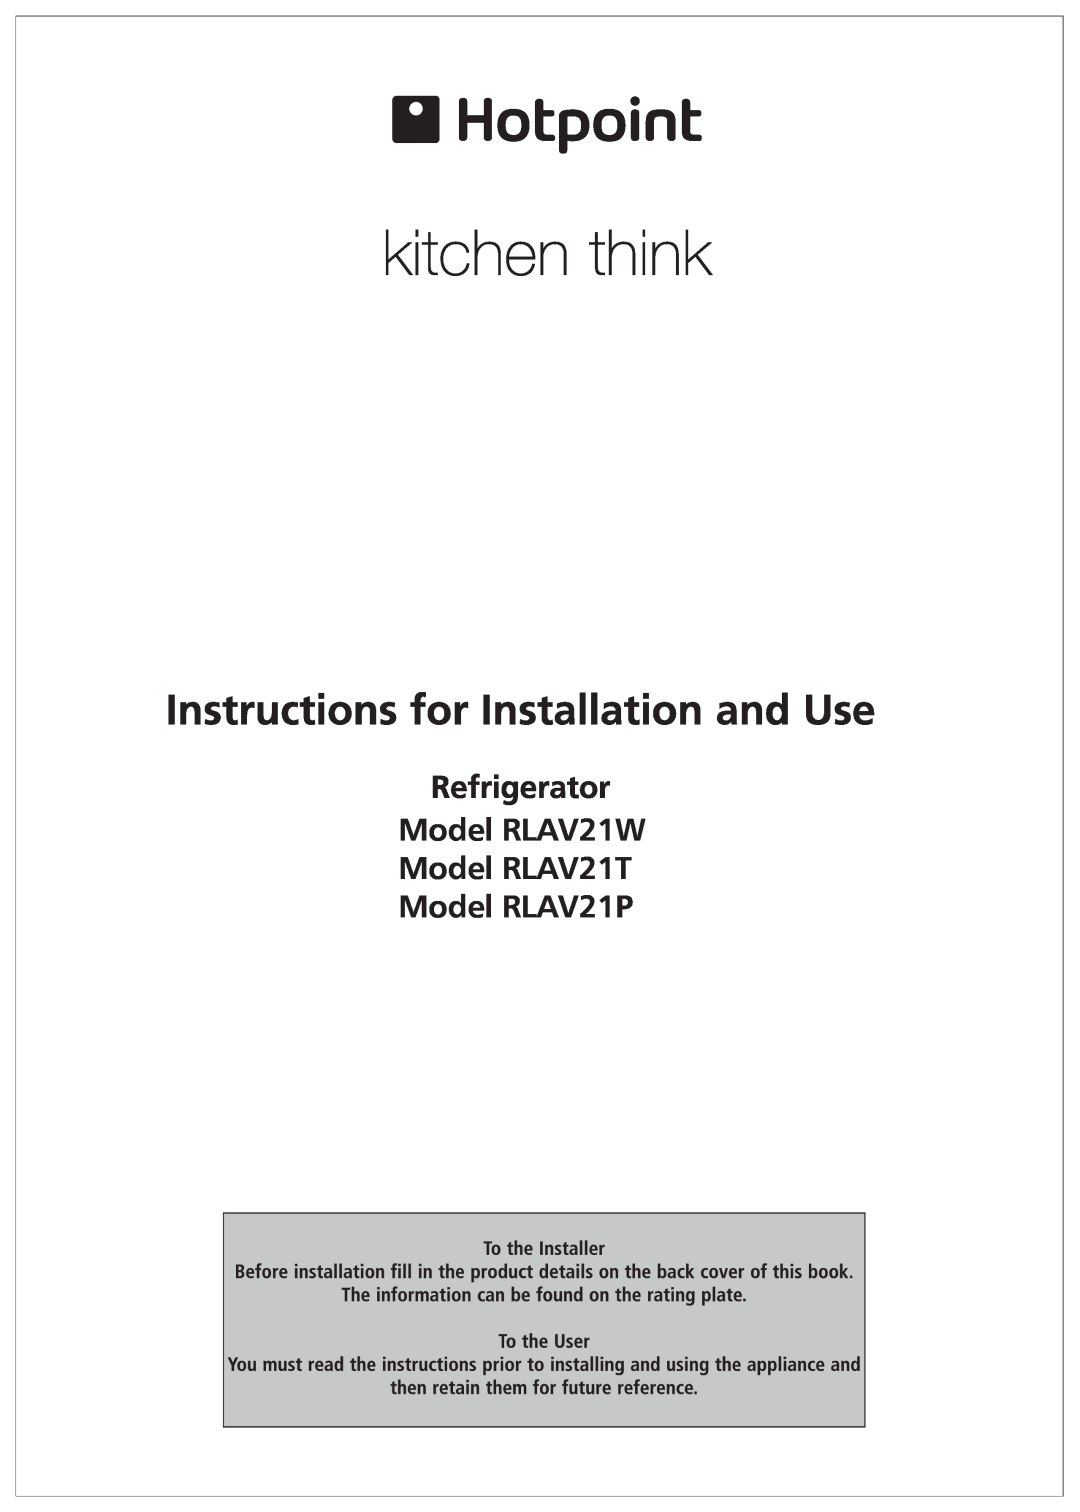 Hotpoint RLAV21K, RLAV21P operating instructions Operating Instructions, Refrigerator, Contents 